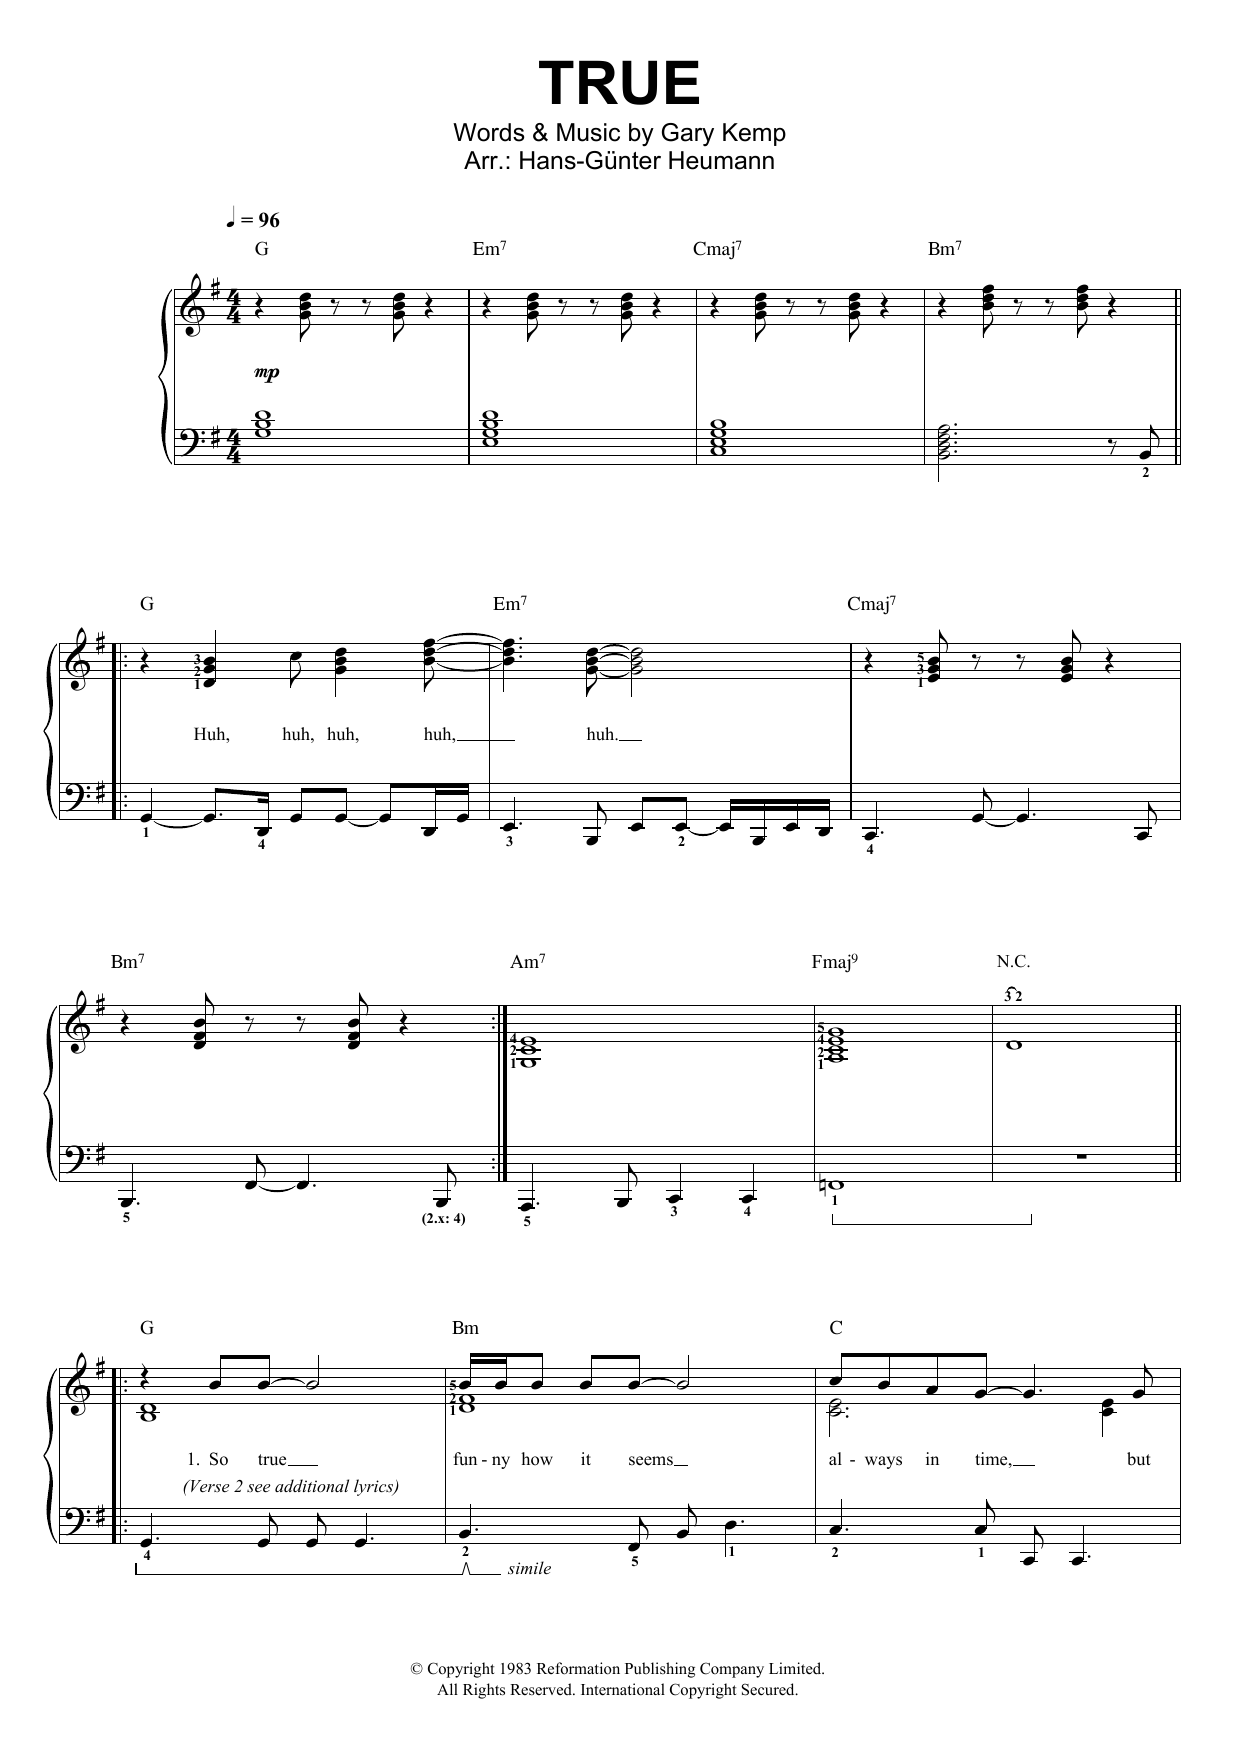 Spandau Ballet True Sheet Music Notes & Chords for Lyrics & Chords - Download or Print PDF